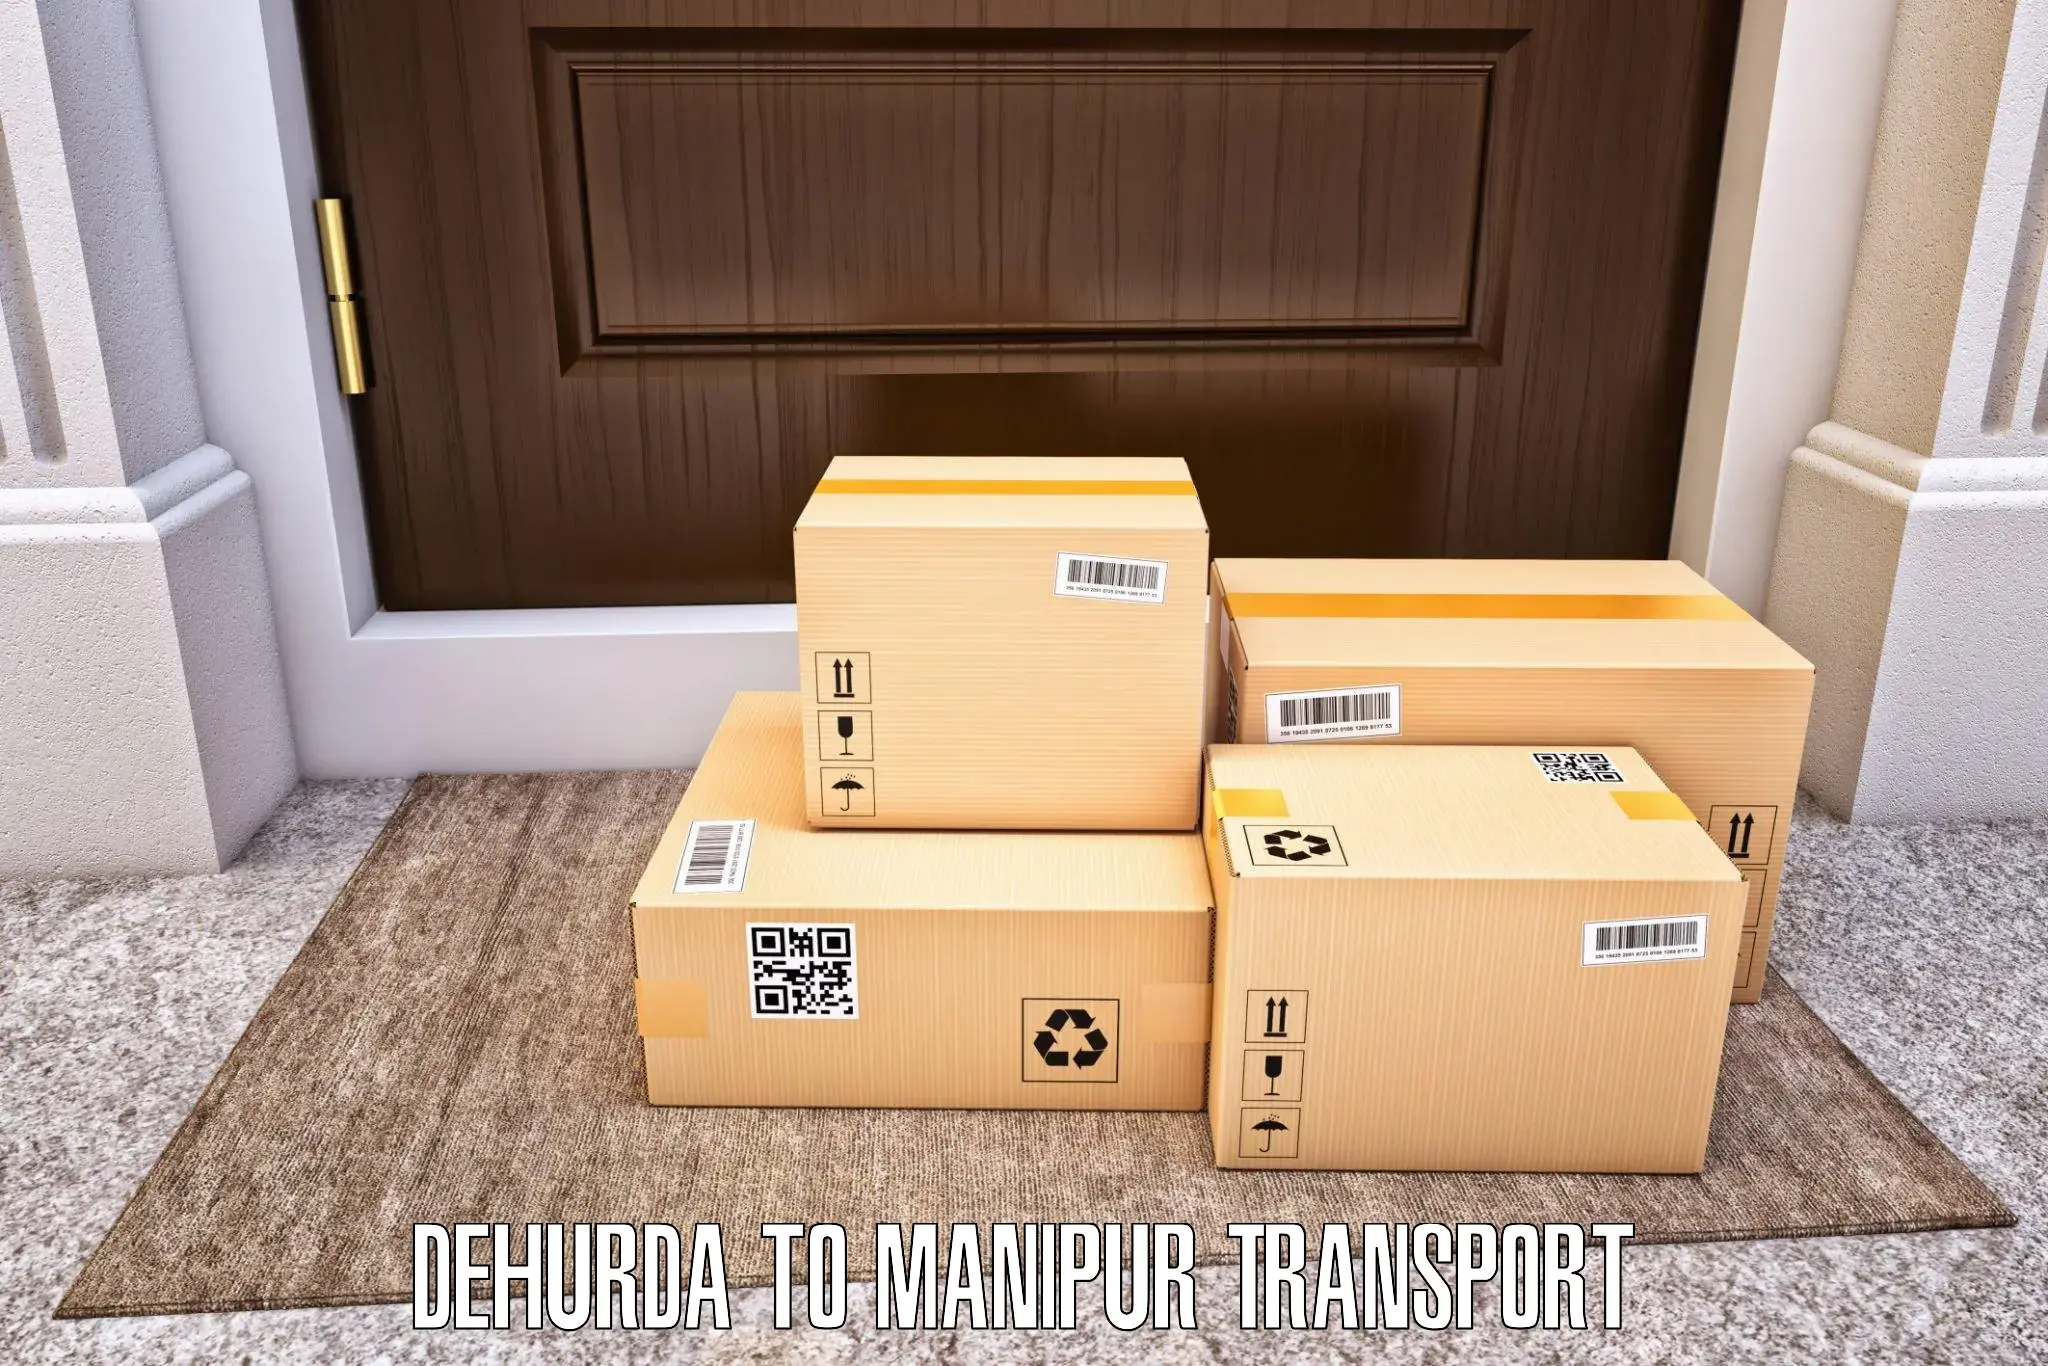 Cargo transport services Dehurda to Senapati